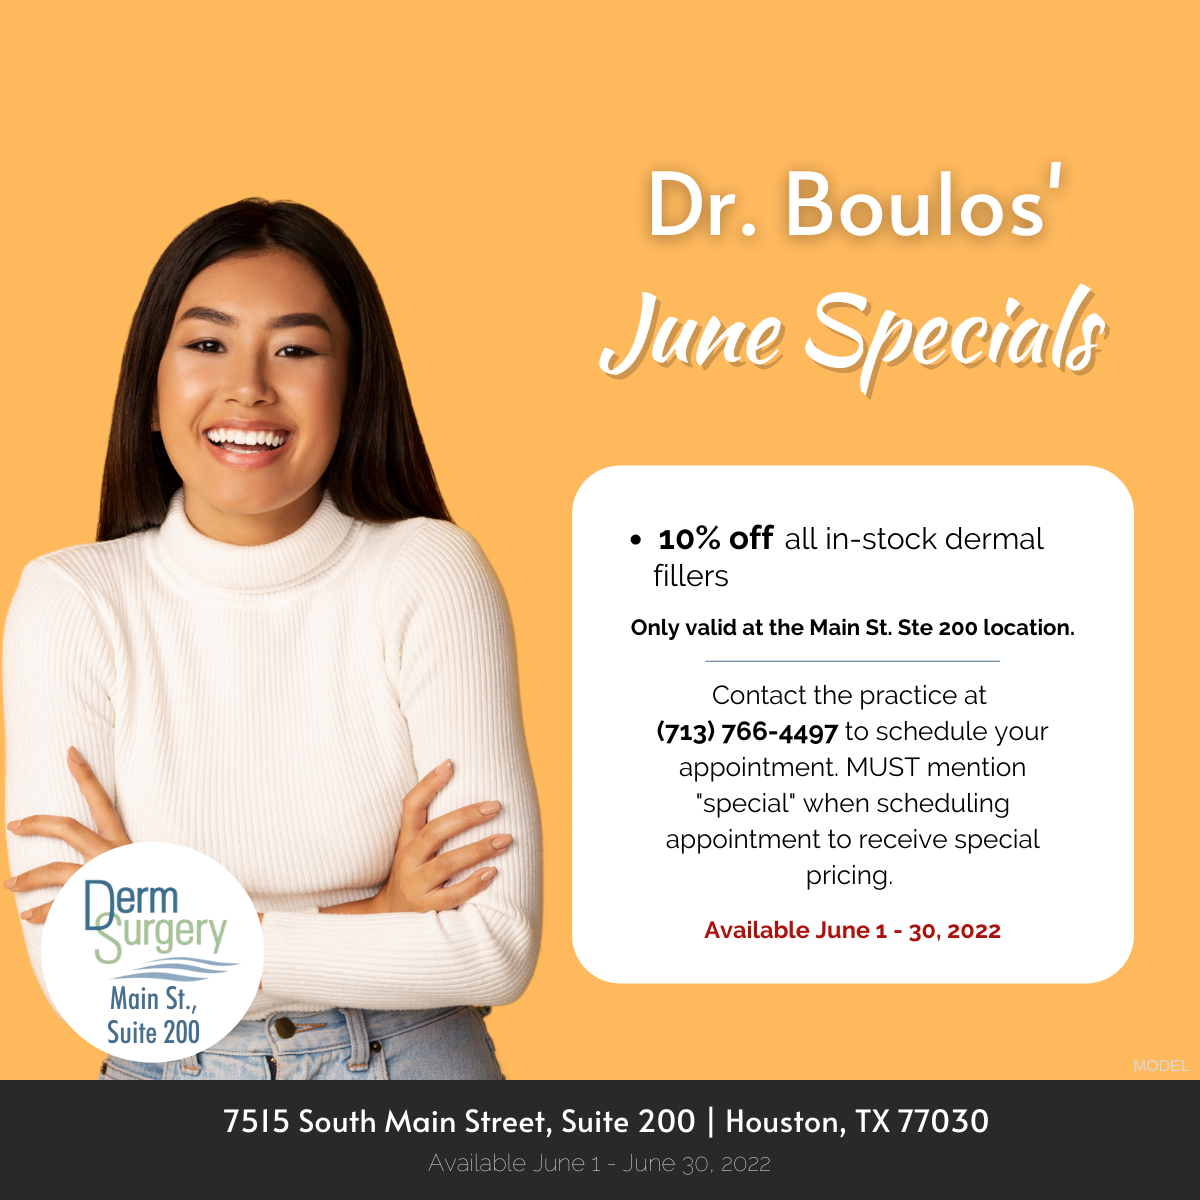 Dr. Boulos' June Specials 2022